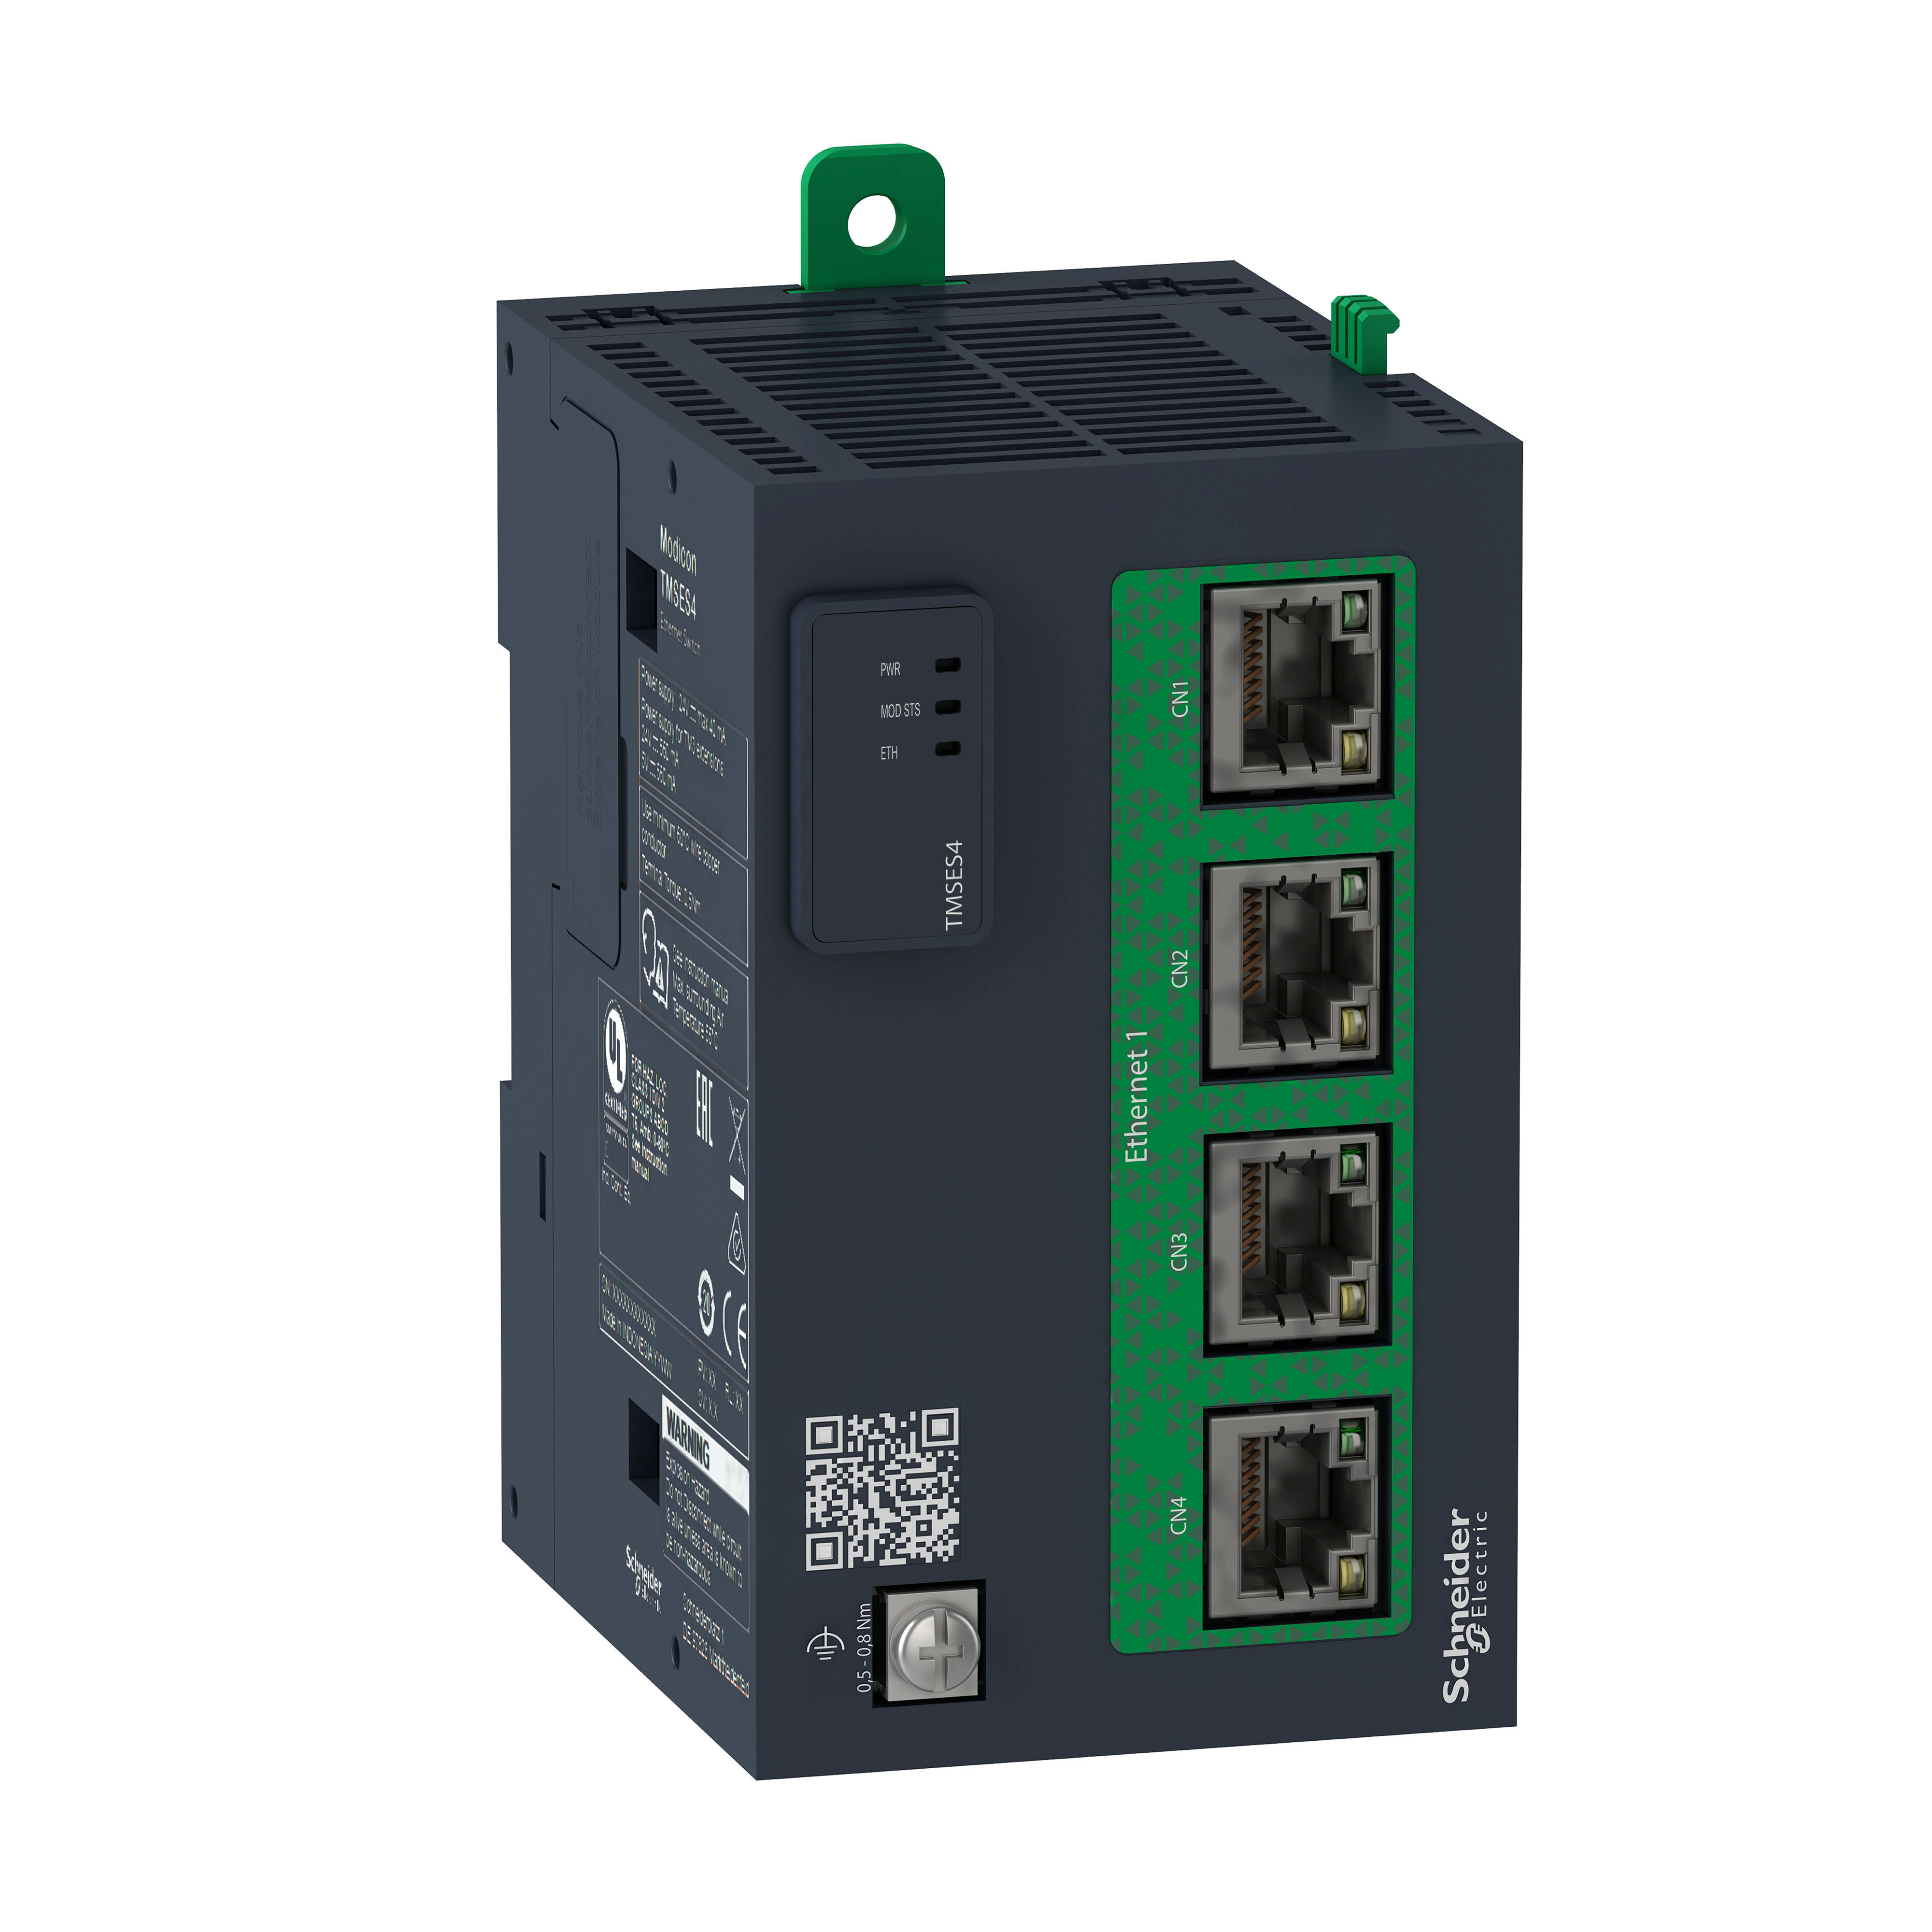 smart communication module, Modicon M262, Ethernet, 4 RJ45